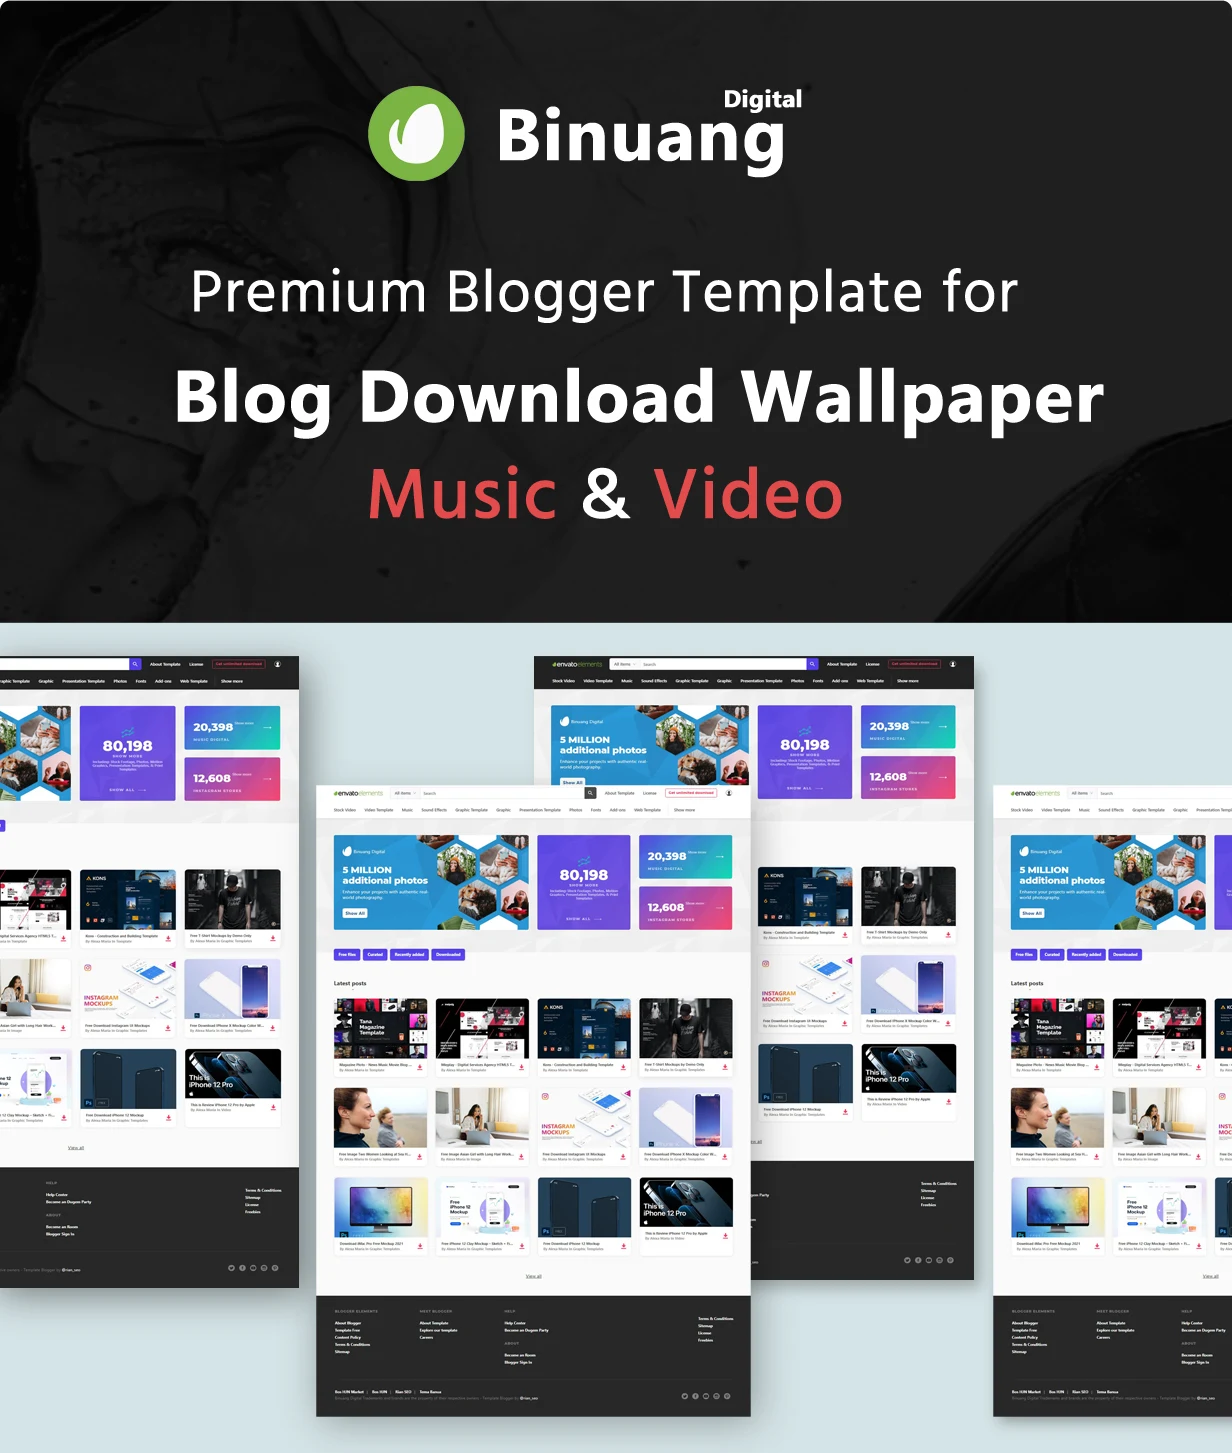 Binuang Digital - Blogger Template for Blog Download